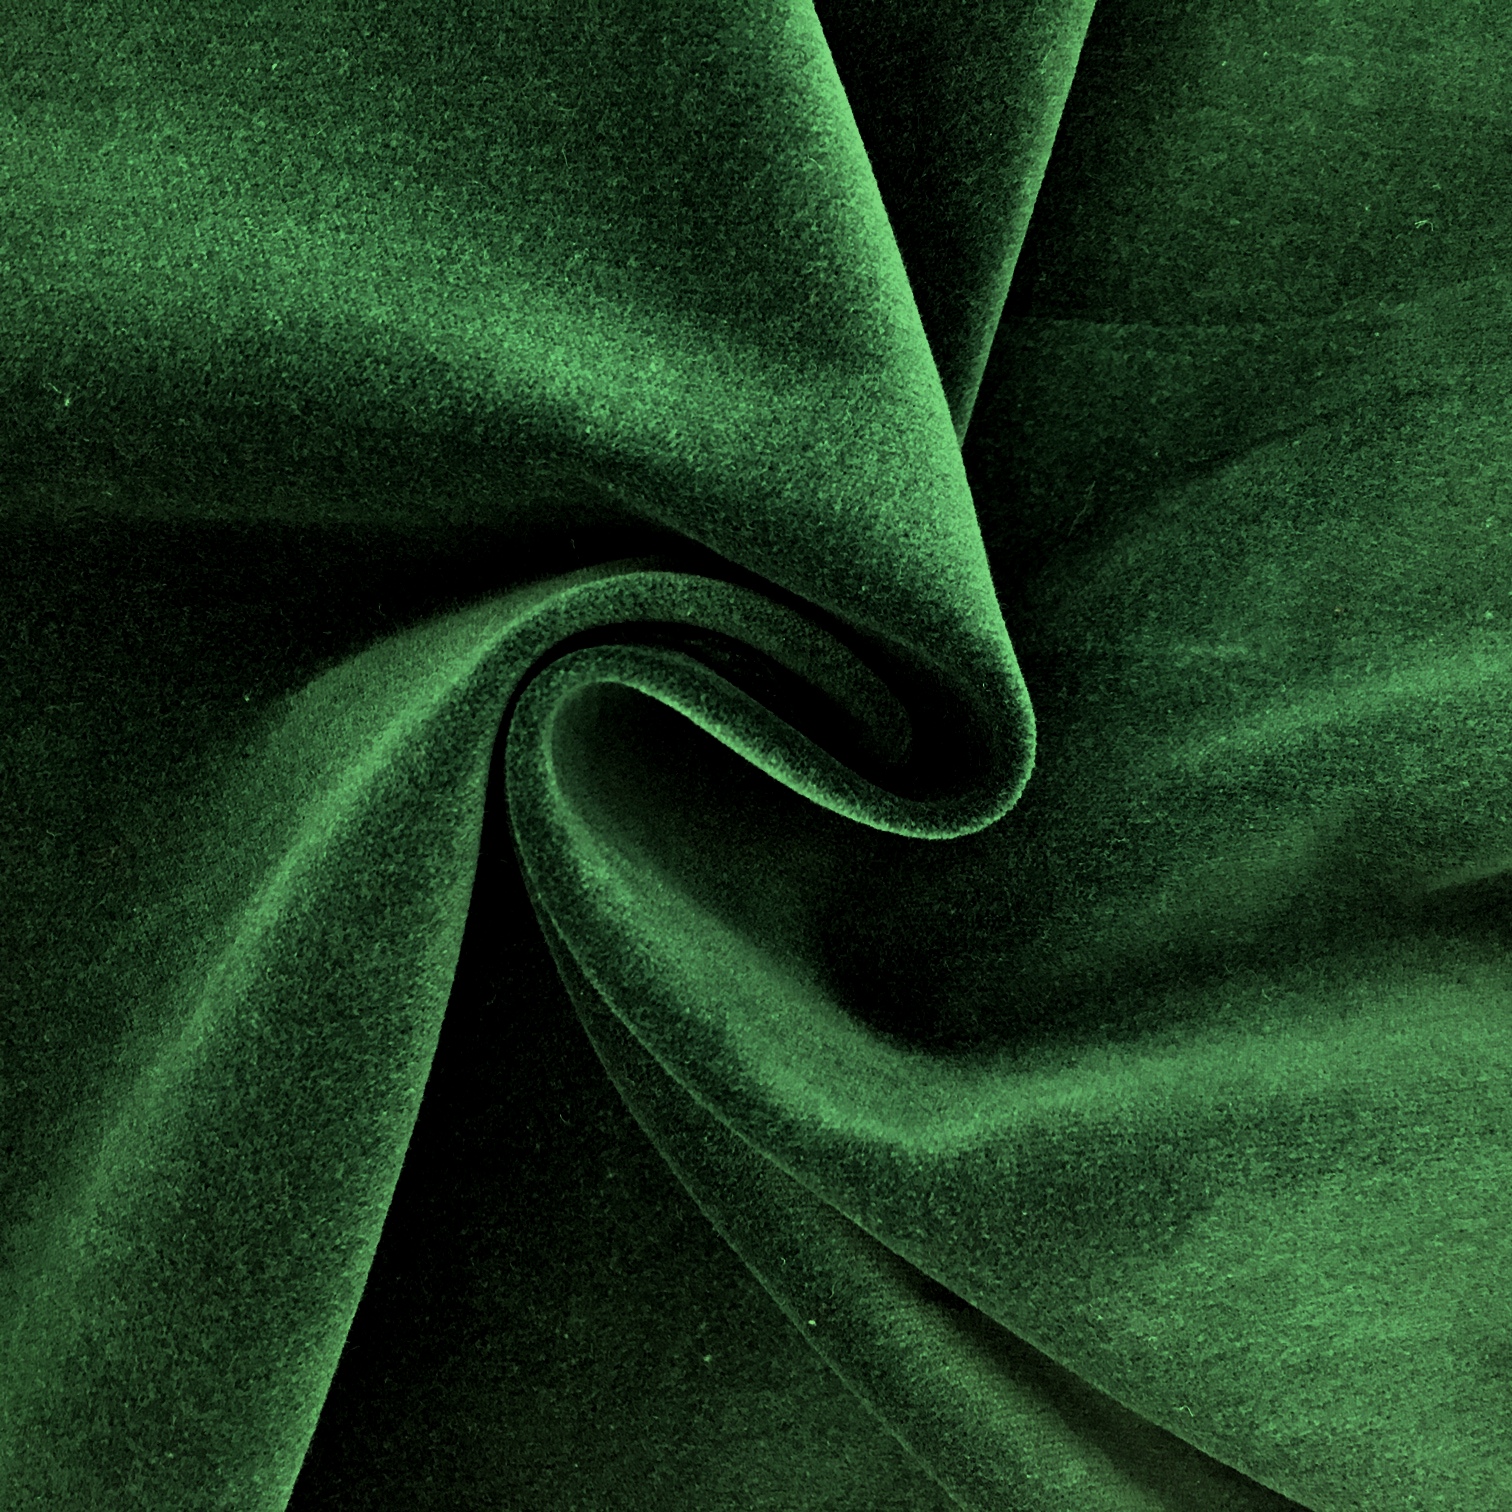 Emerald Green Velvet Fabric